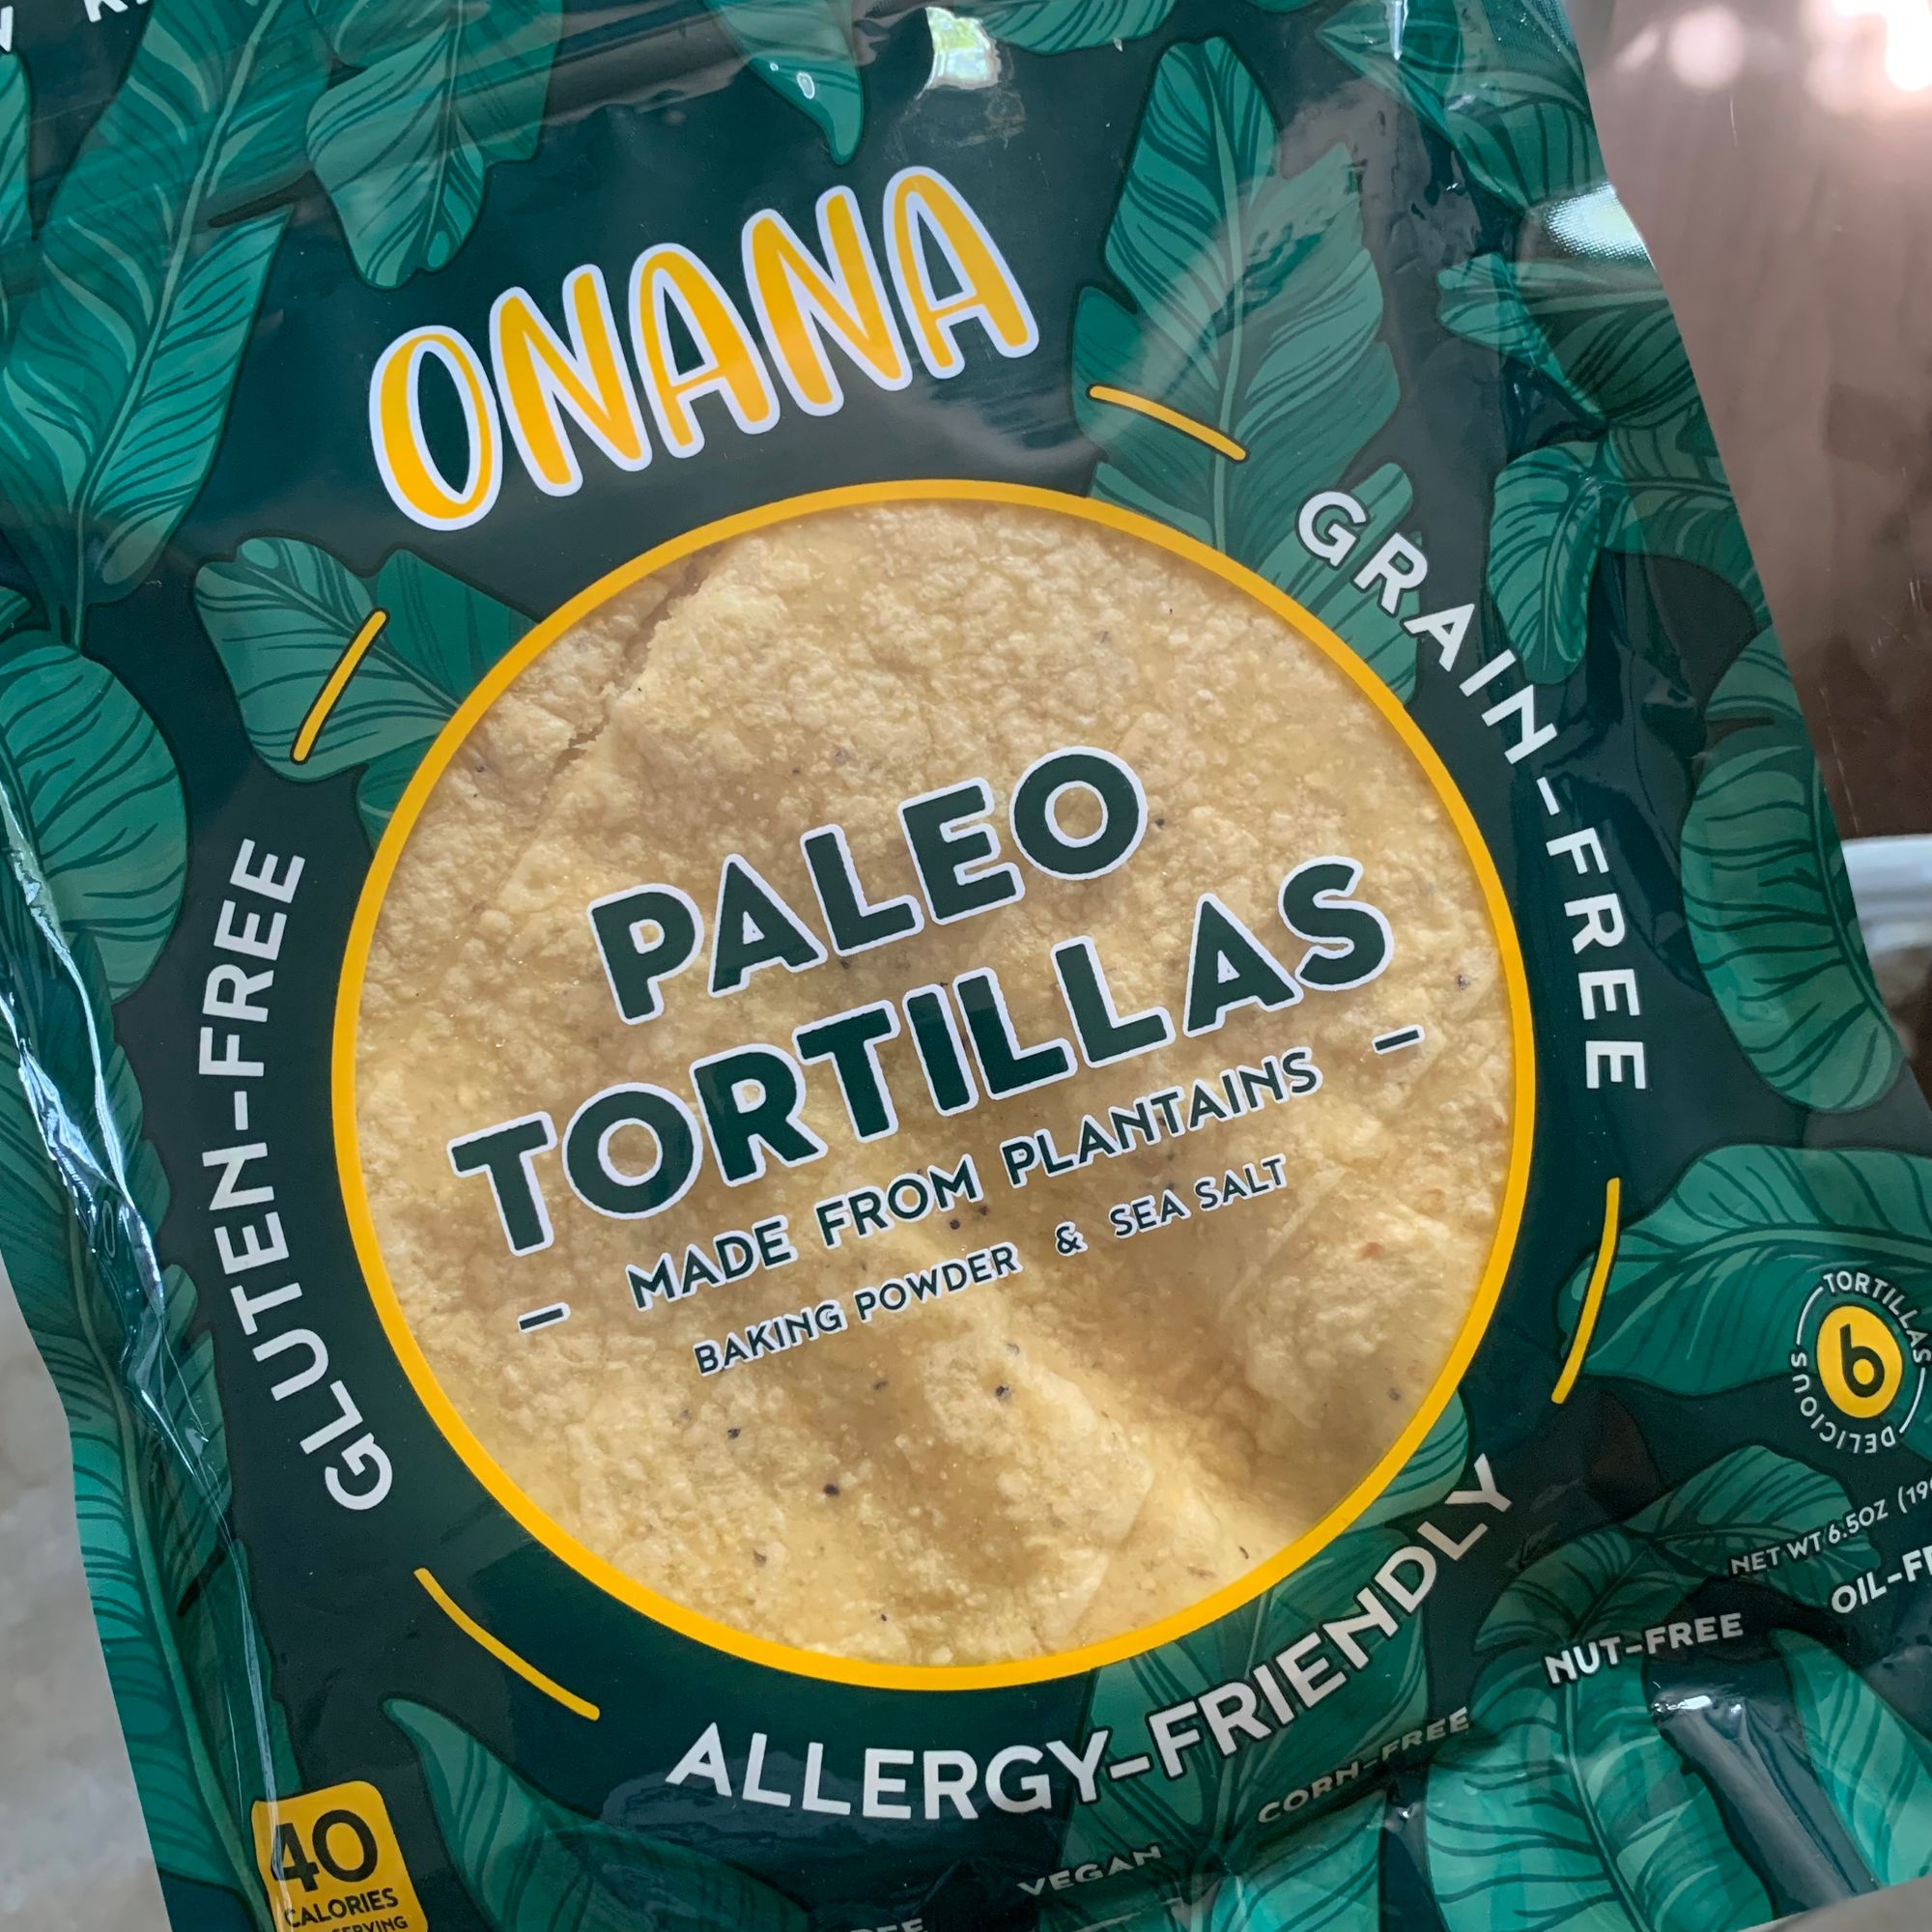 Onana gluten-free tortillas